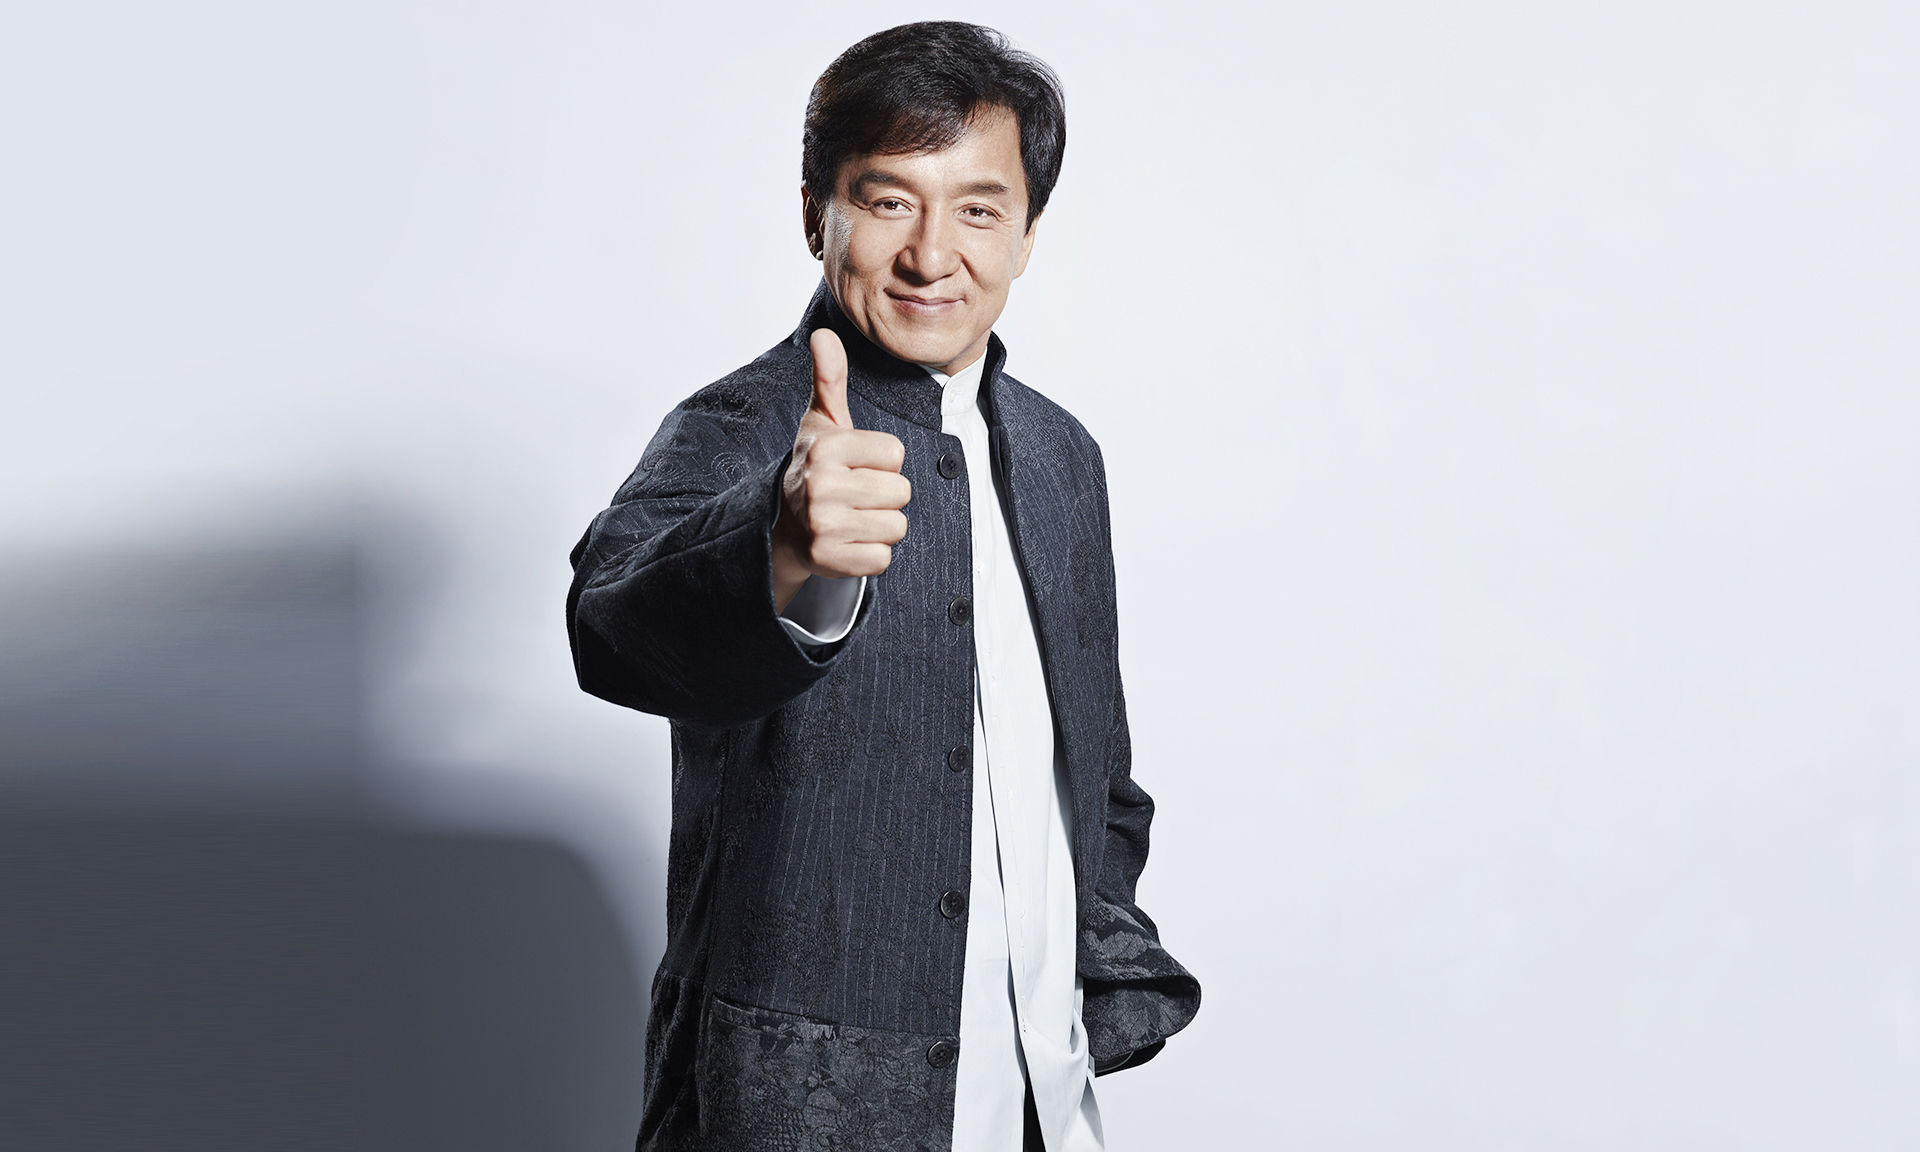 高清晰武打巨星Jackie Chan成龙壁纸下载-欧莱凯设计网